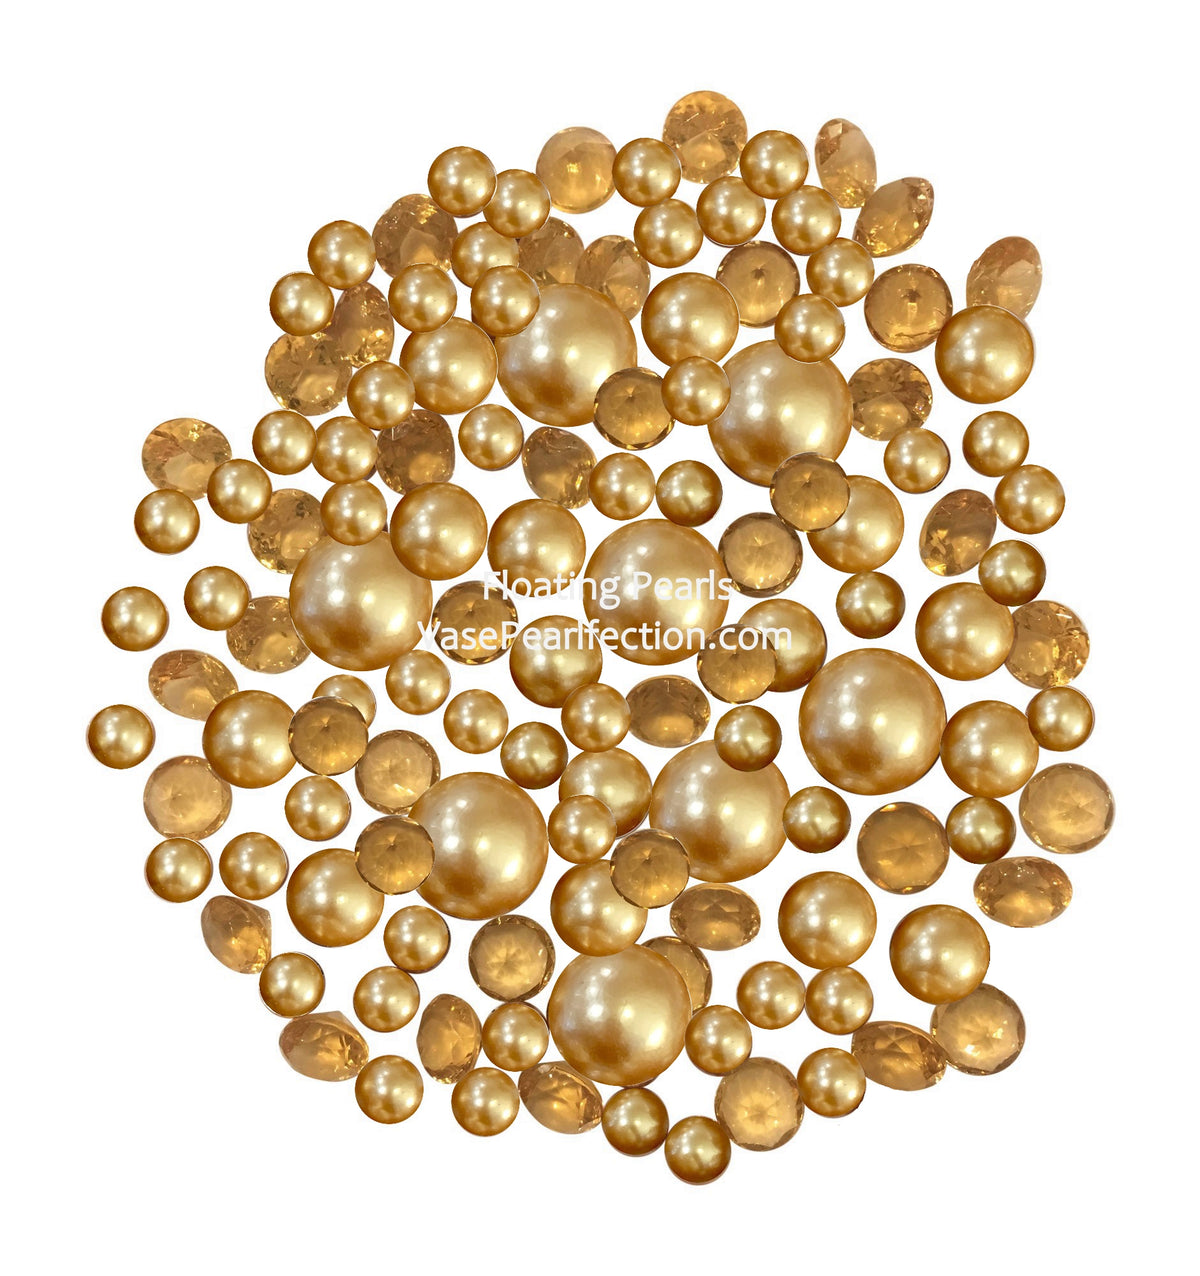 120 perlas doradas "flotantes" y detalles de gemas brillantes a juego - Jumbo sin agujeros y tamaños variados Decoraciones de jarrones y decoraciones de mesa